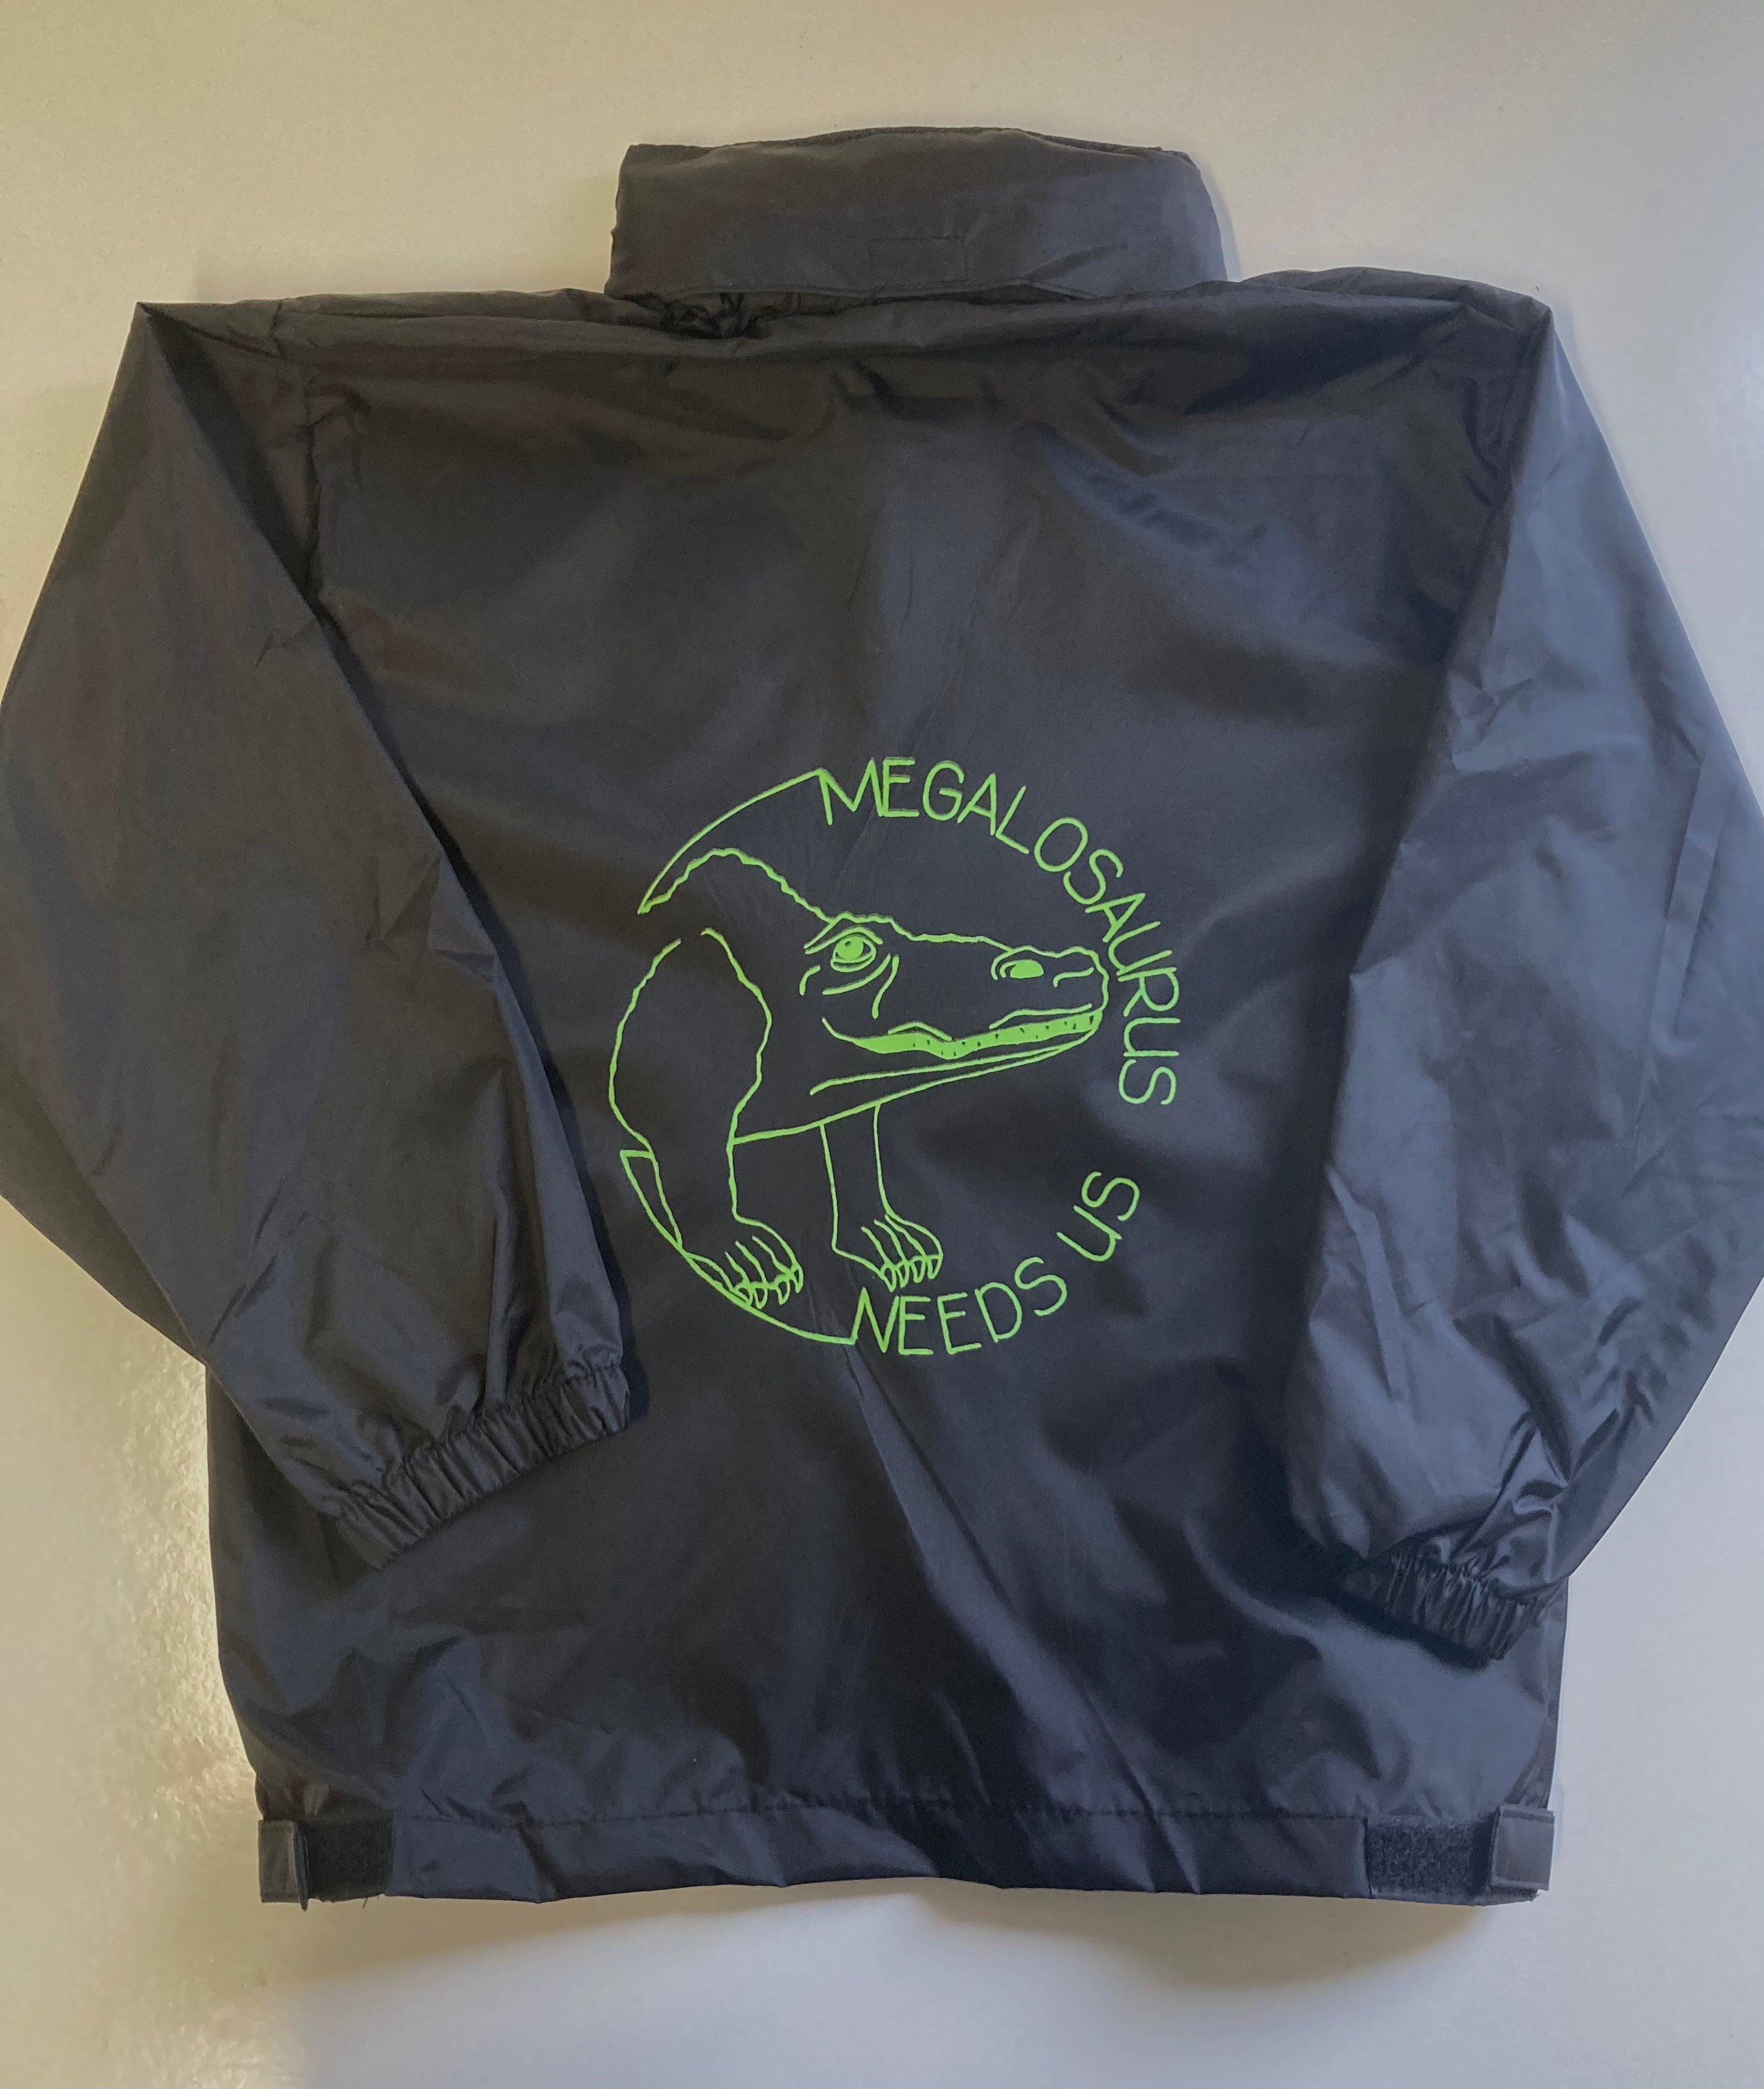 Megalosaurus Needs Us - Showerproof Windbreaker Jacket